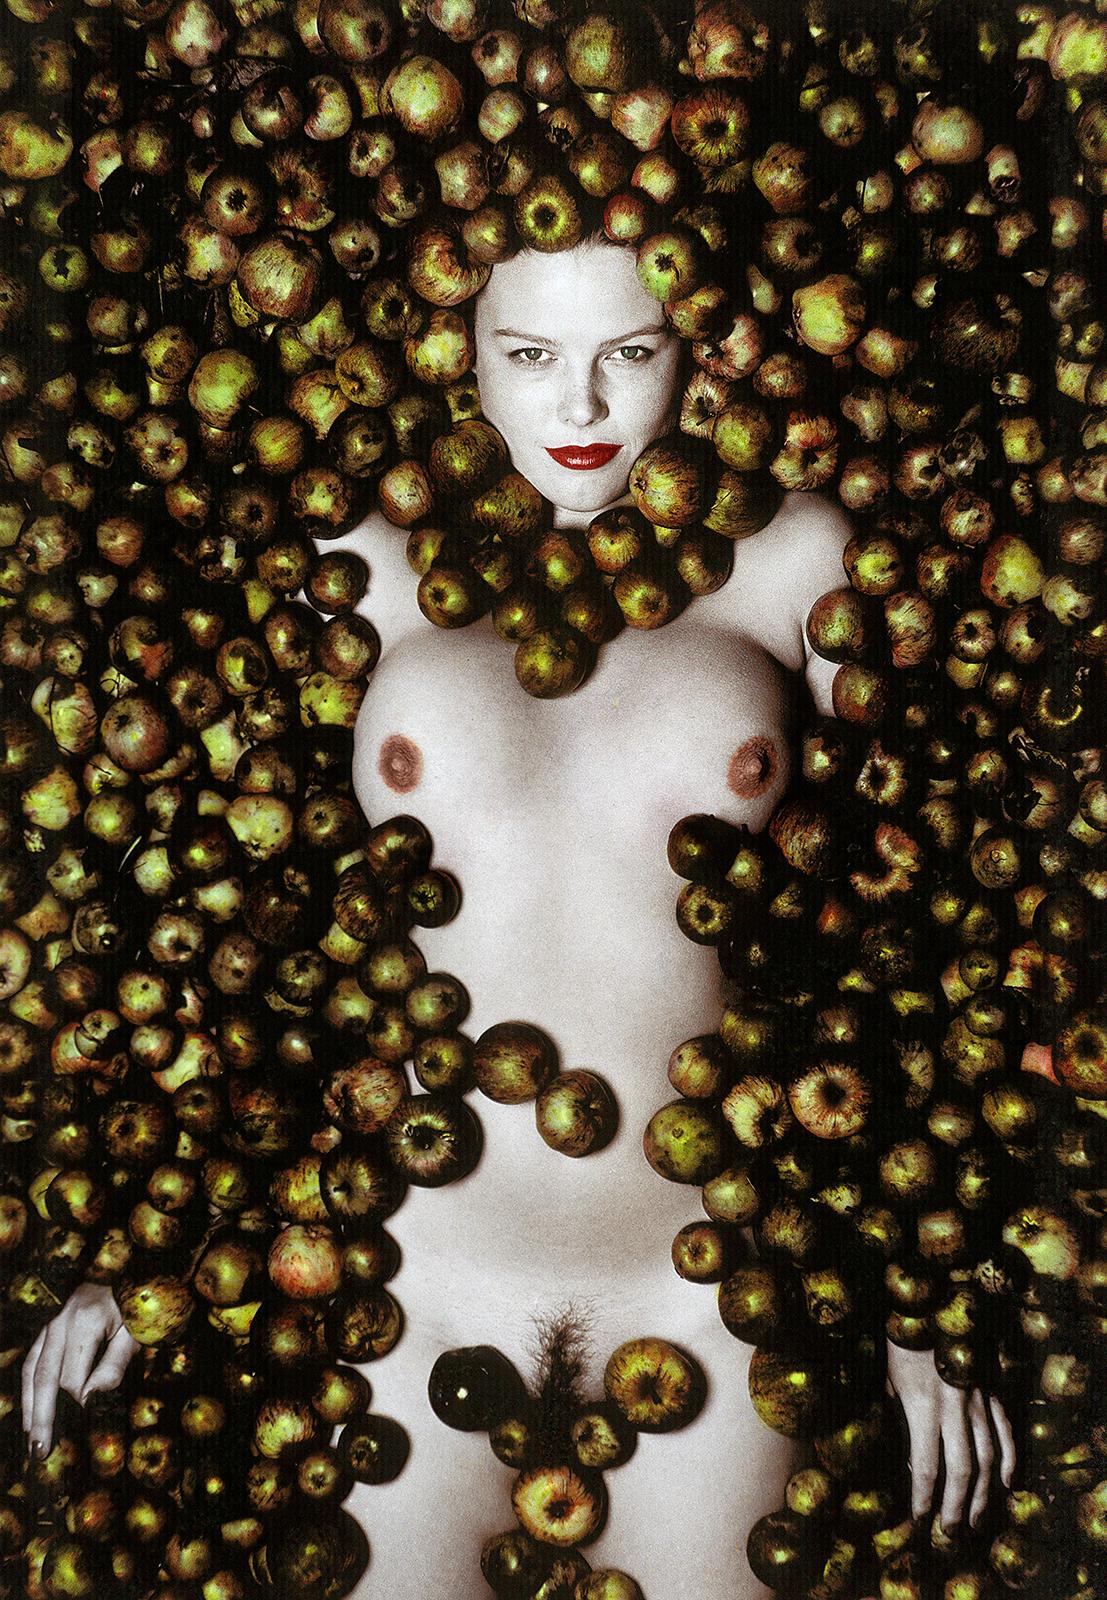 Äpfel – signierter Stillleben-Kunstdruck in limitierter Auflage, Farbfoto, Modell